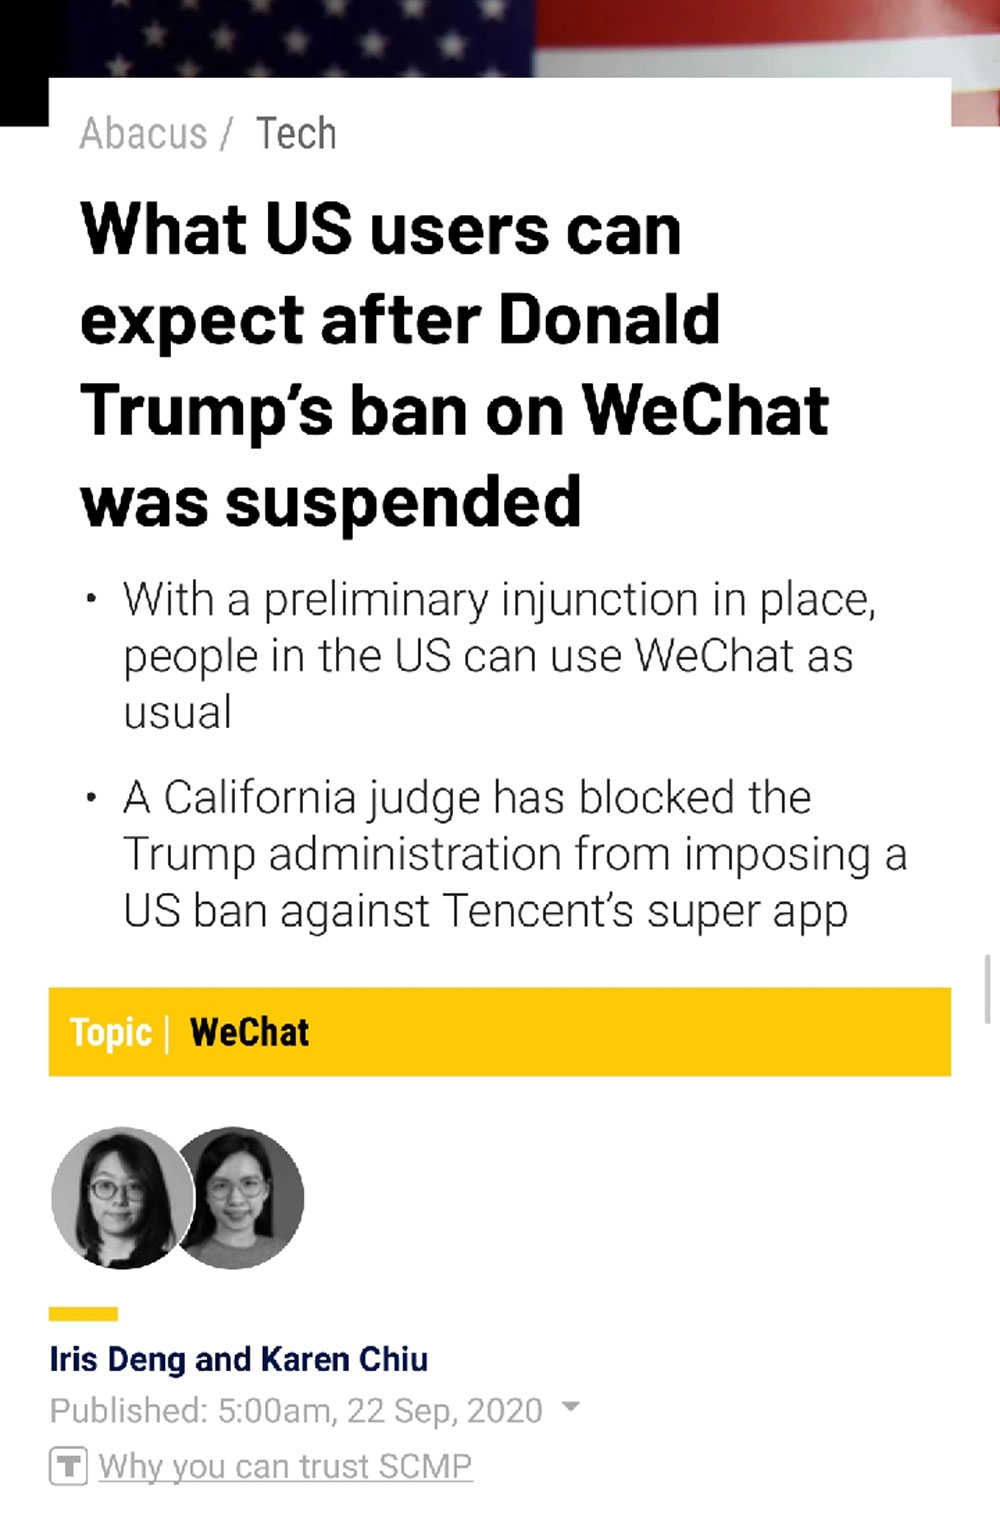 TikTok/WeChat situation